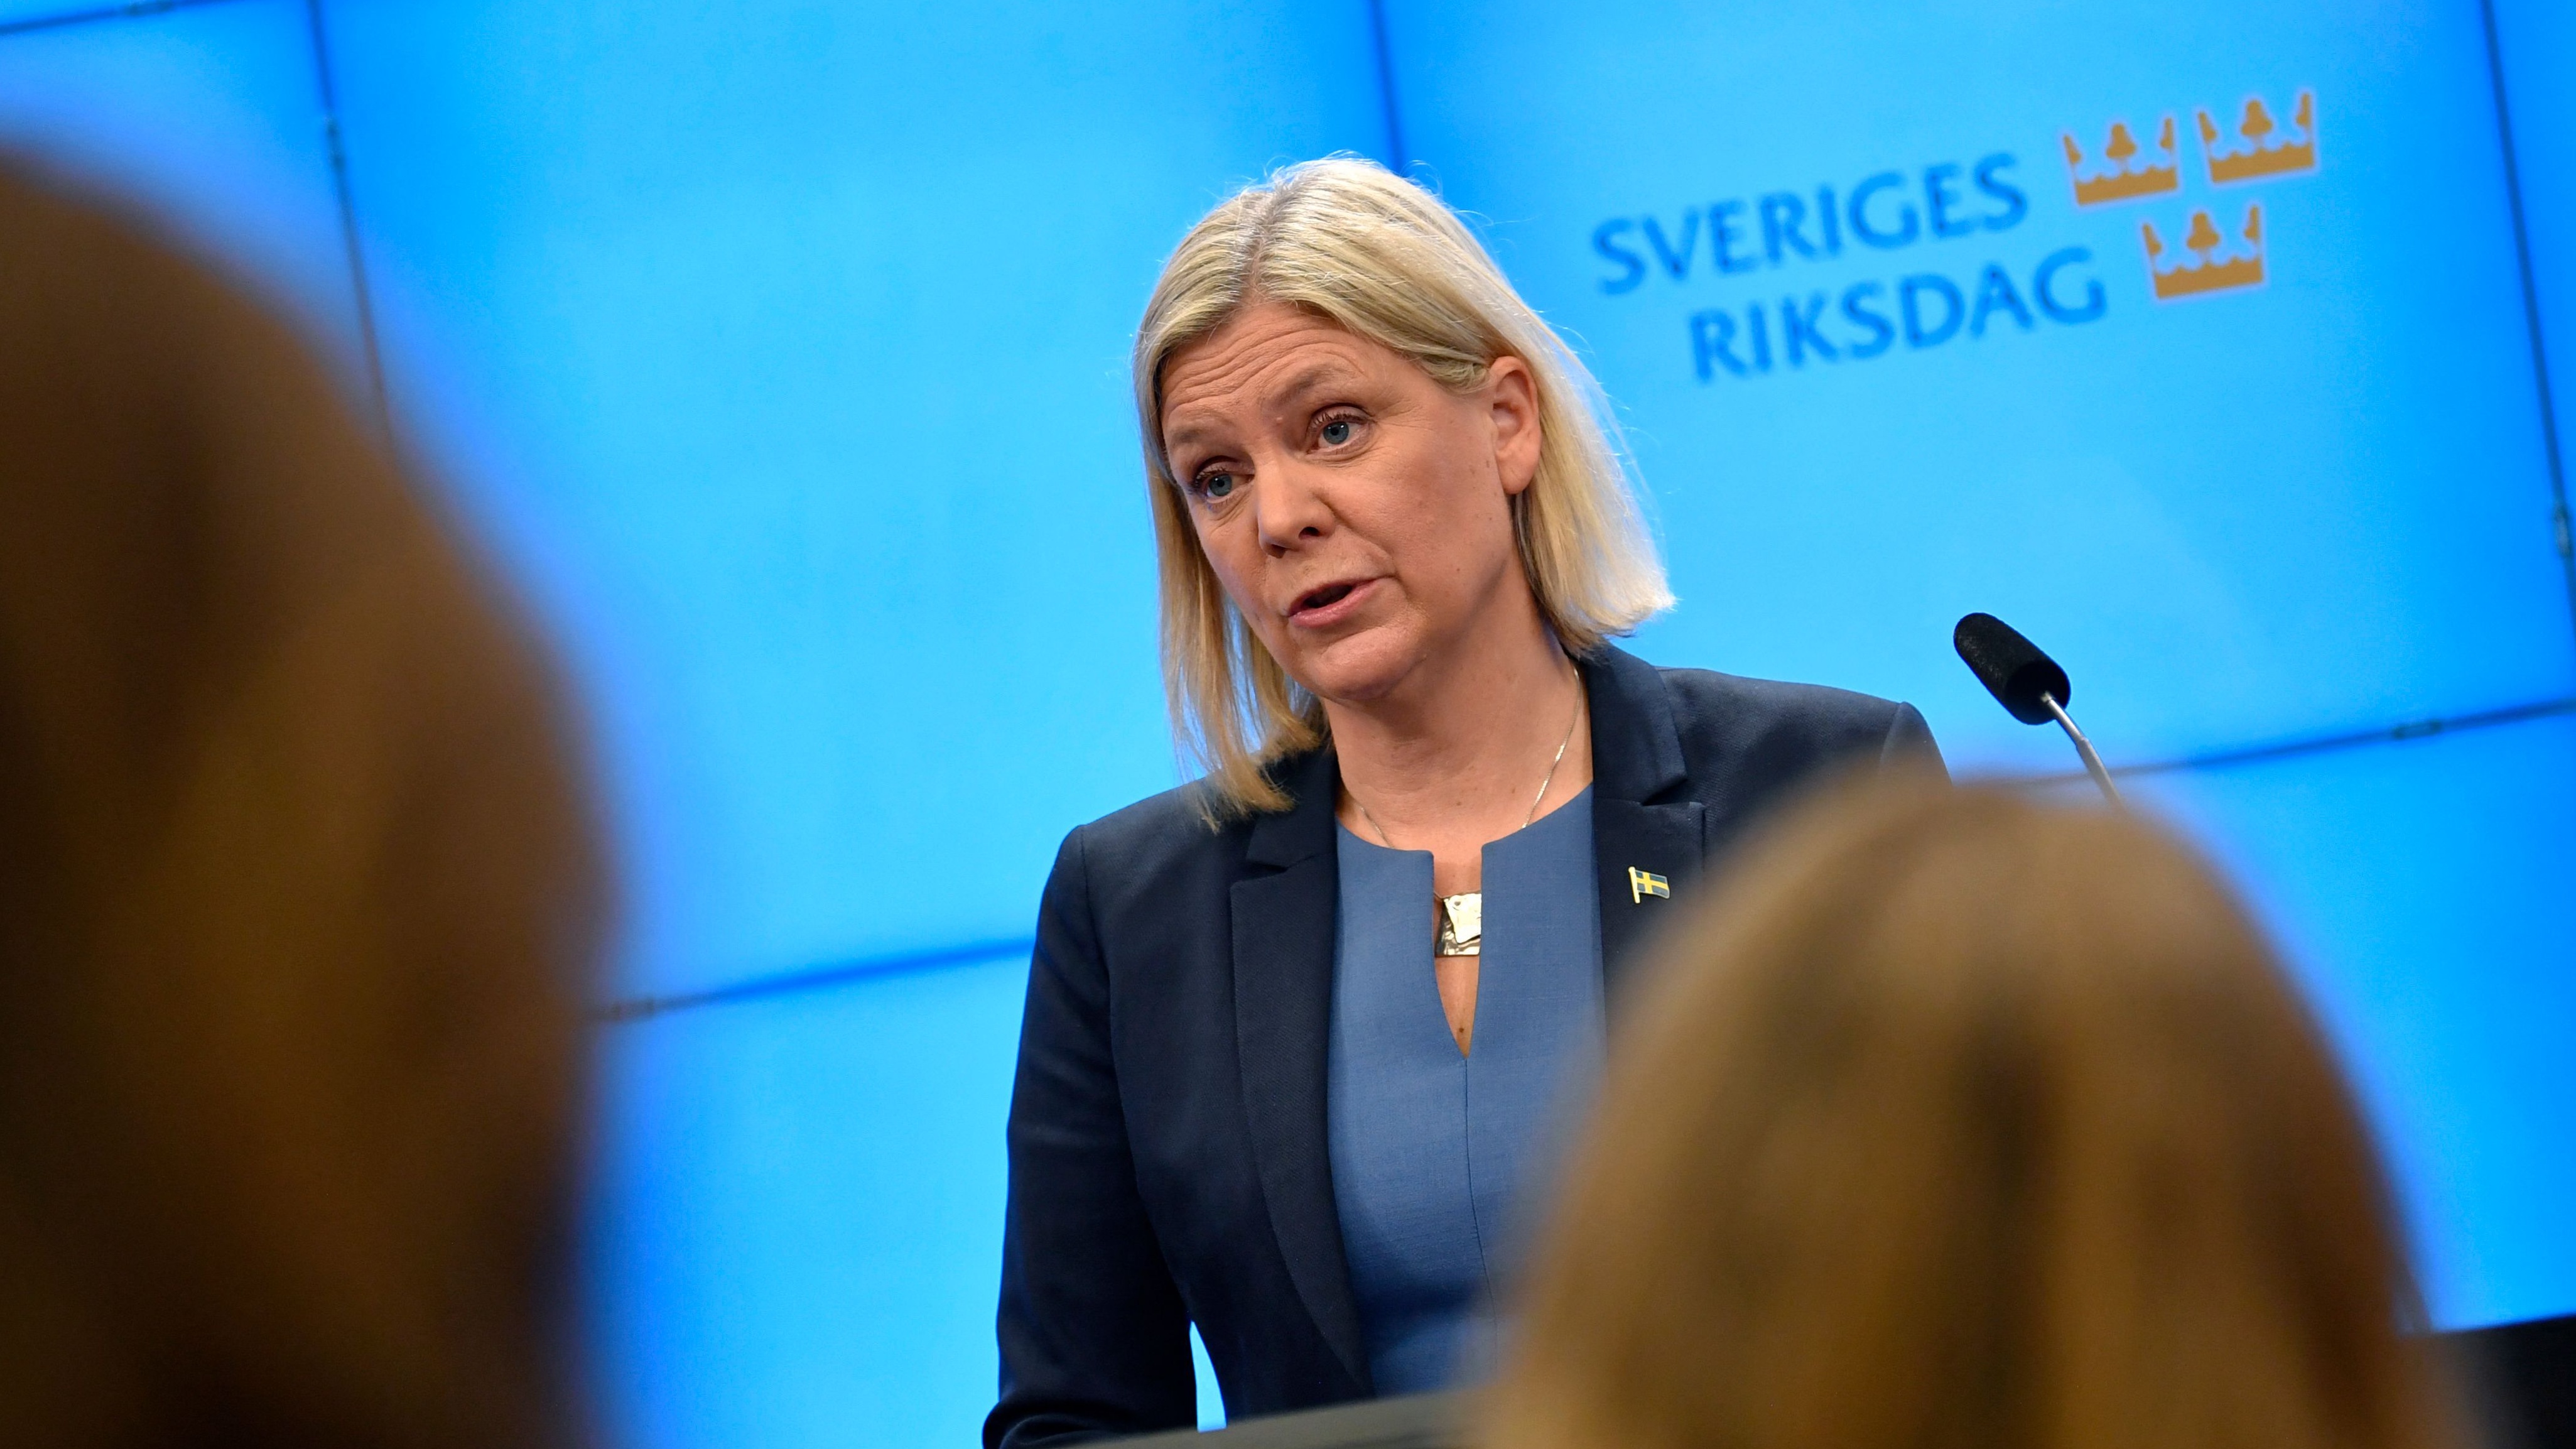 Social Democrat leader and former prime minister Magdalena Andersson